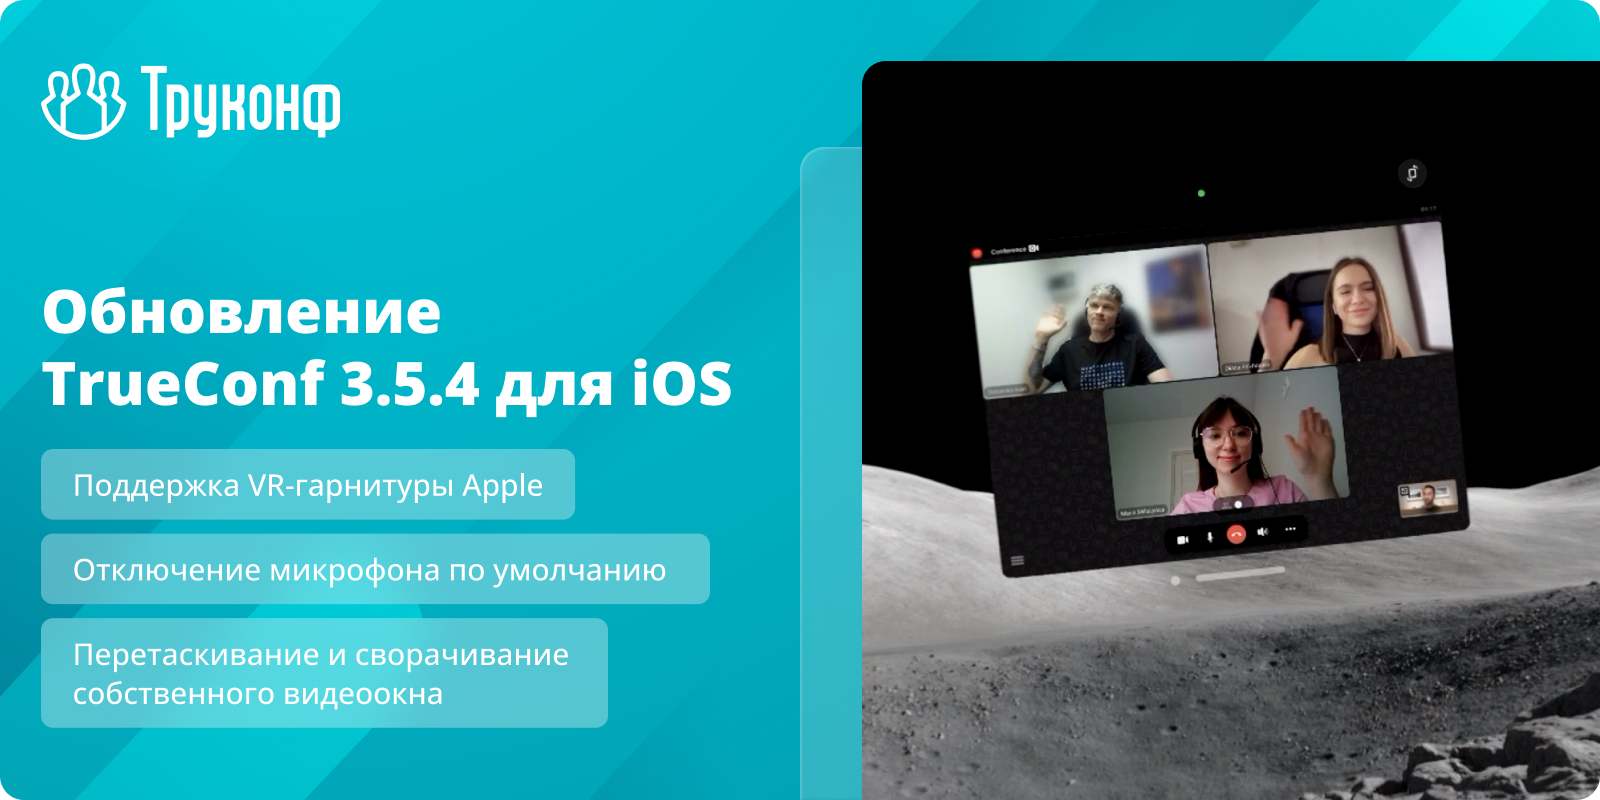 Обновление iOS 3.5.4: поддержка VR-гарнитуры Apple и отключение микрофона по умолчанию 2